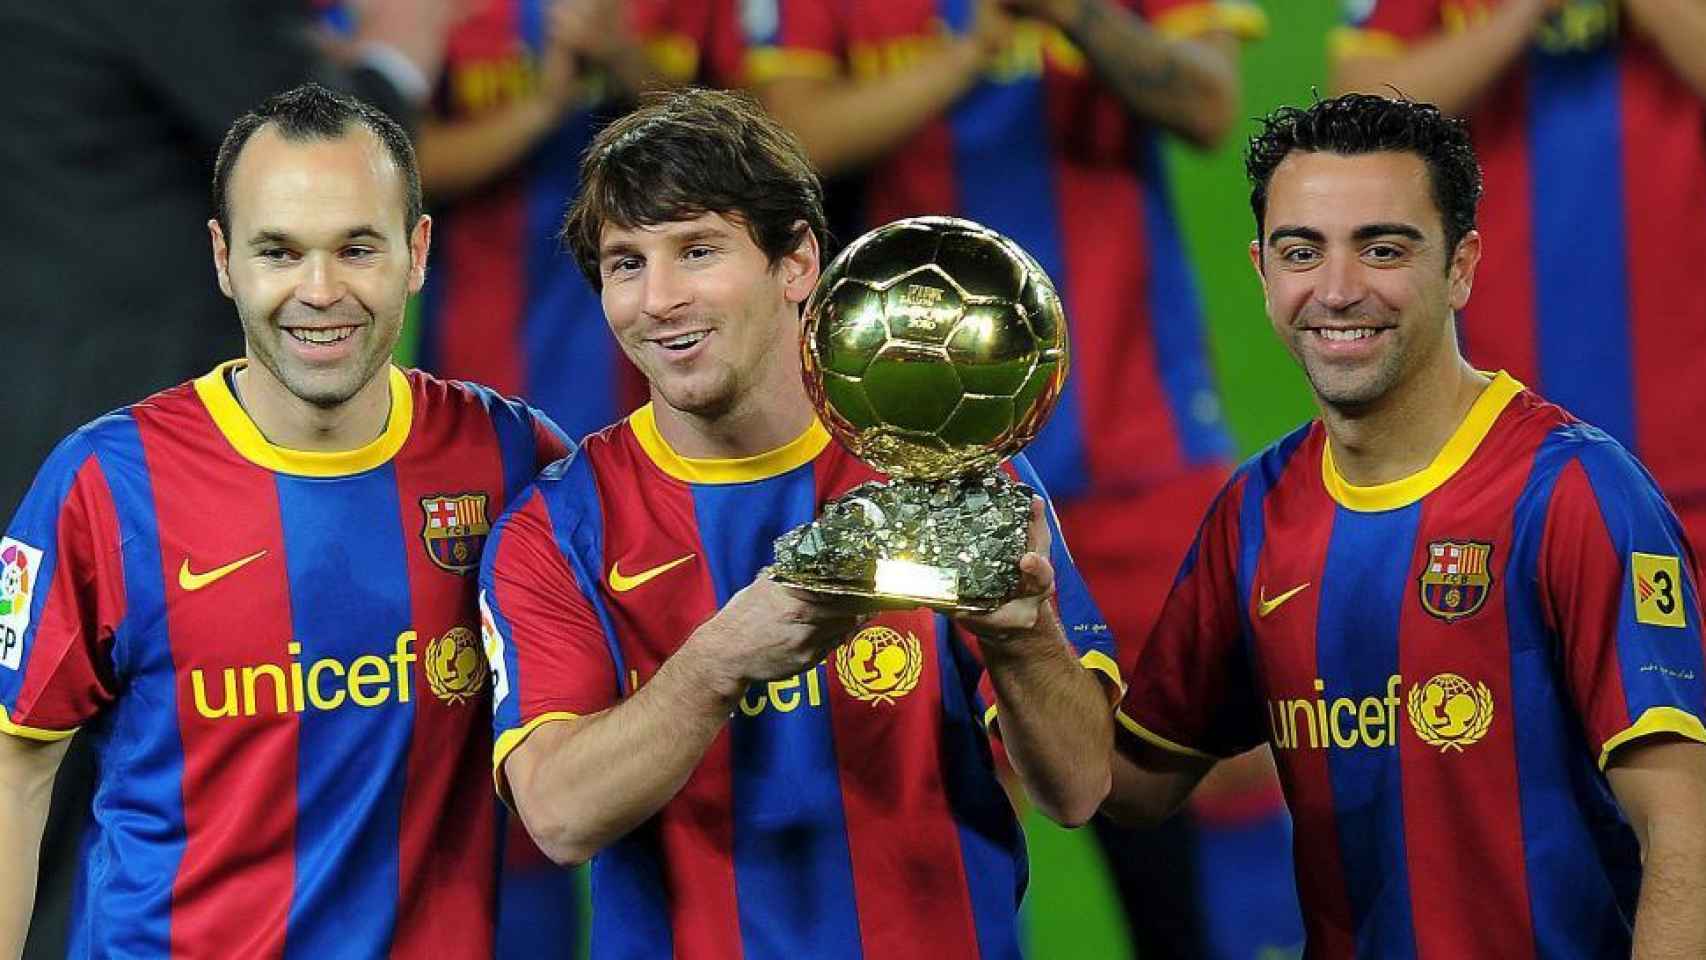 Iniesta, nombrado segundo mejor jugador del mundo, posa junto a Messi (ganador del Balón de Oro) y Xavi (tercero).